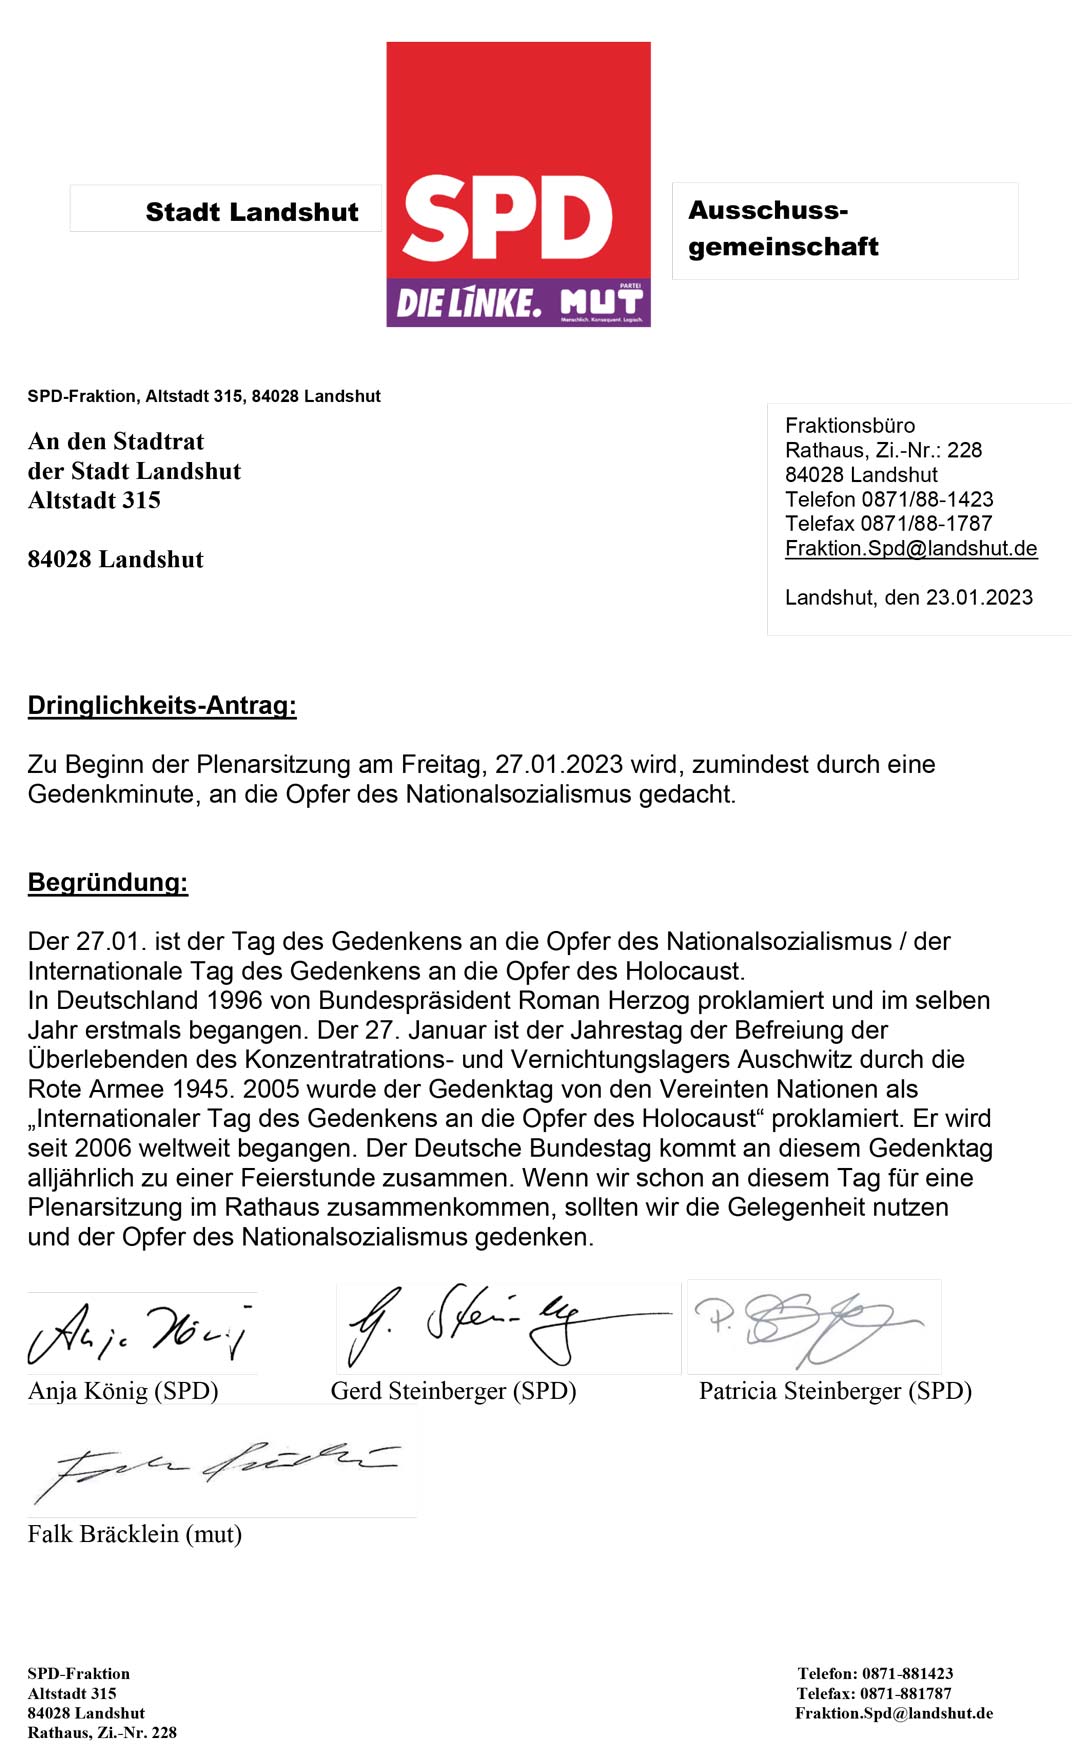 Dringlichkeitsantrag Gedenken an die Opfer des Nationalsozialismus (Ausschussgemeinschaft SPD, die Linke, mut)